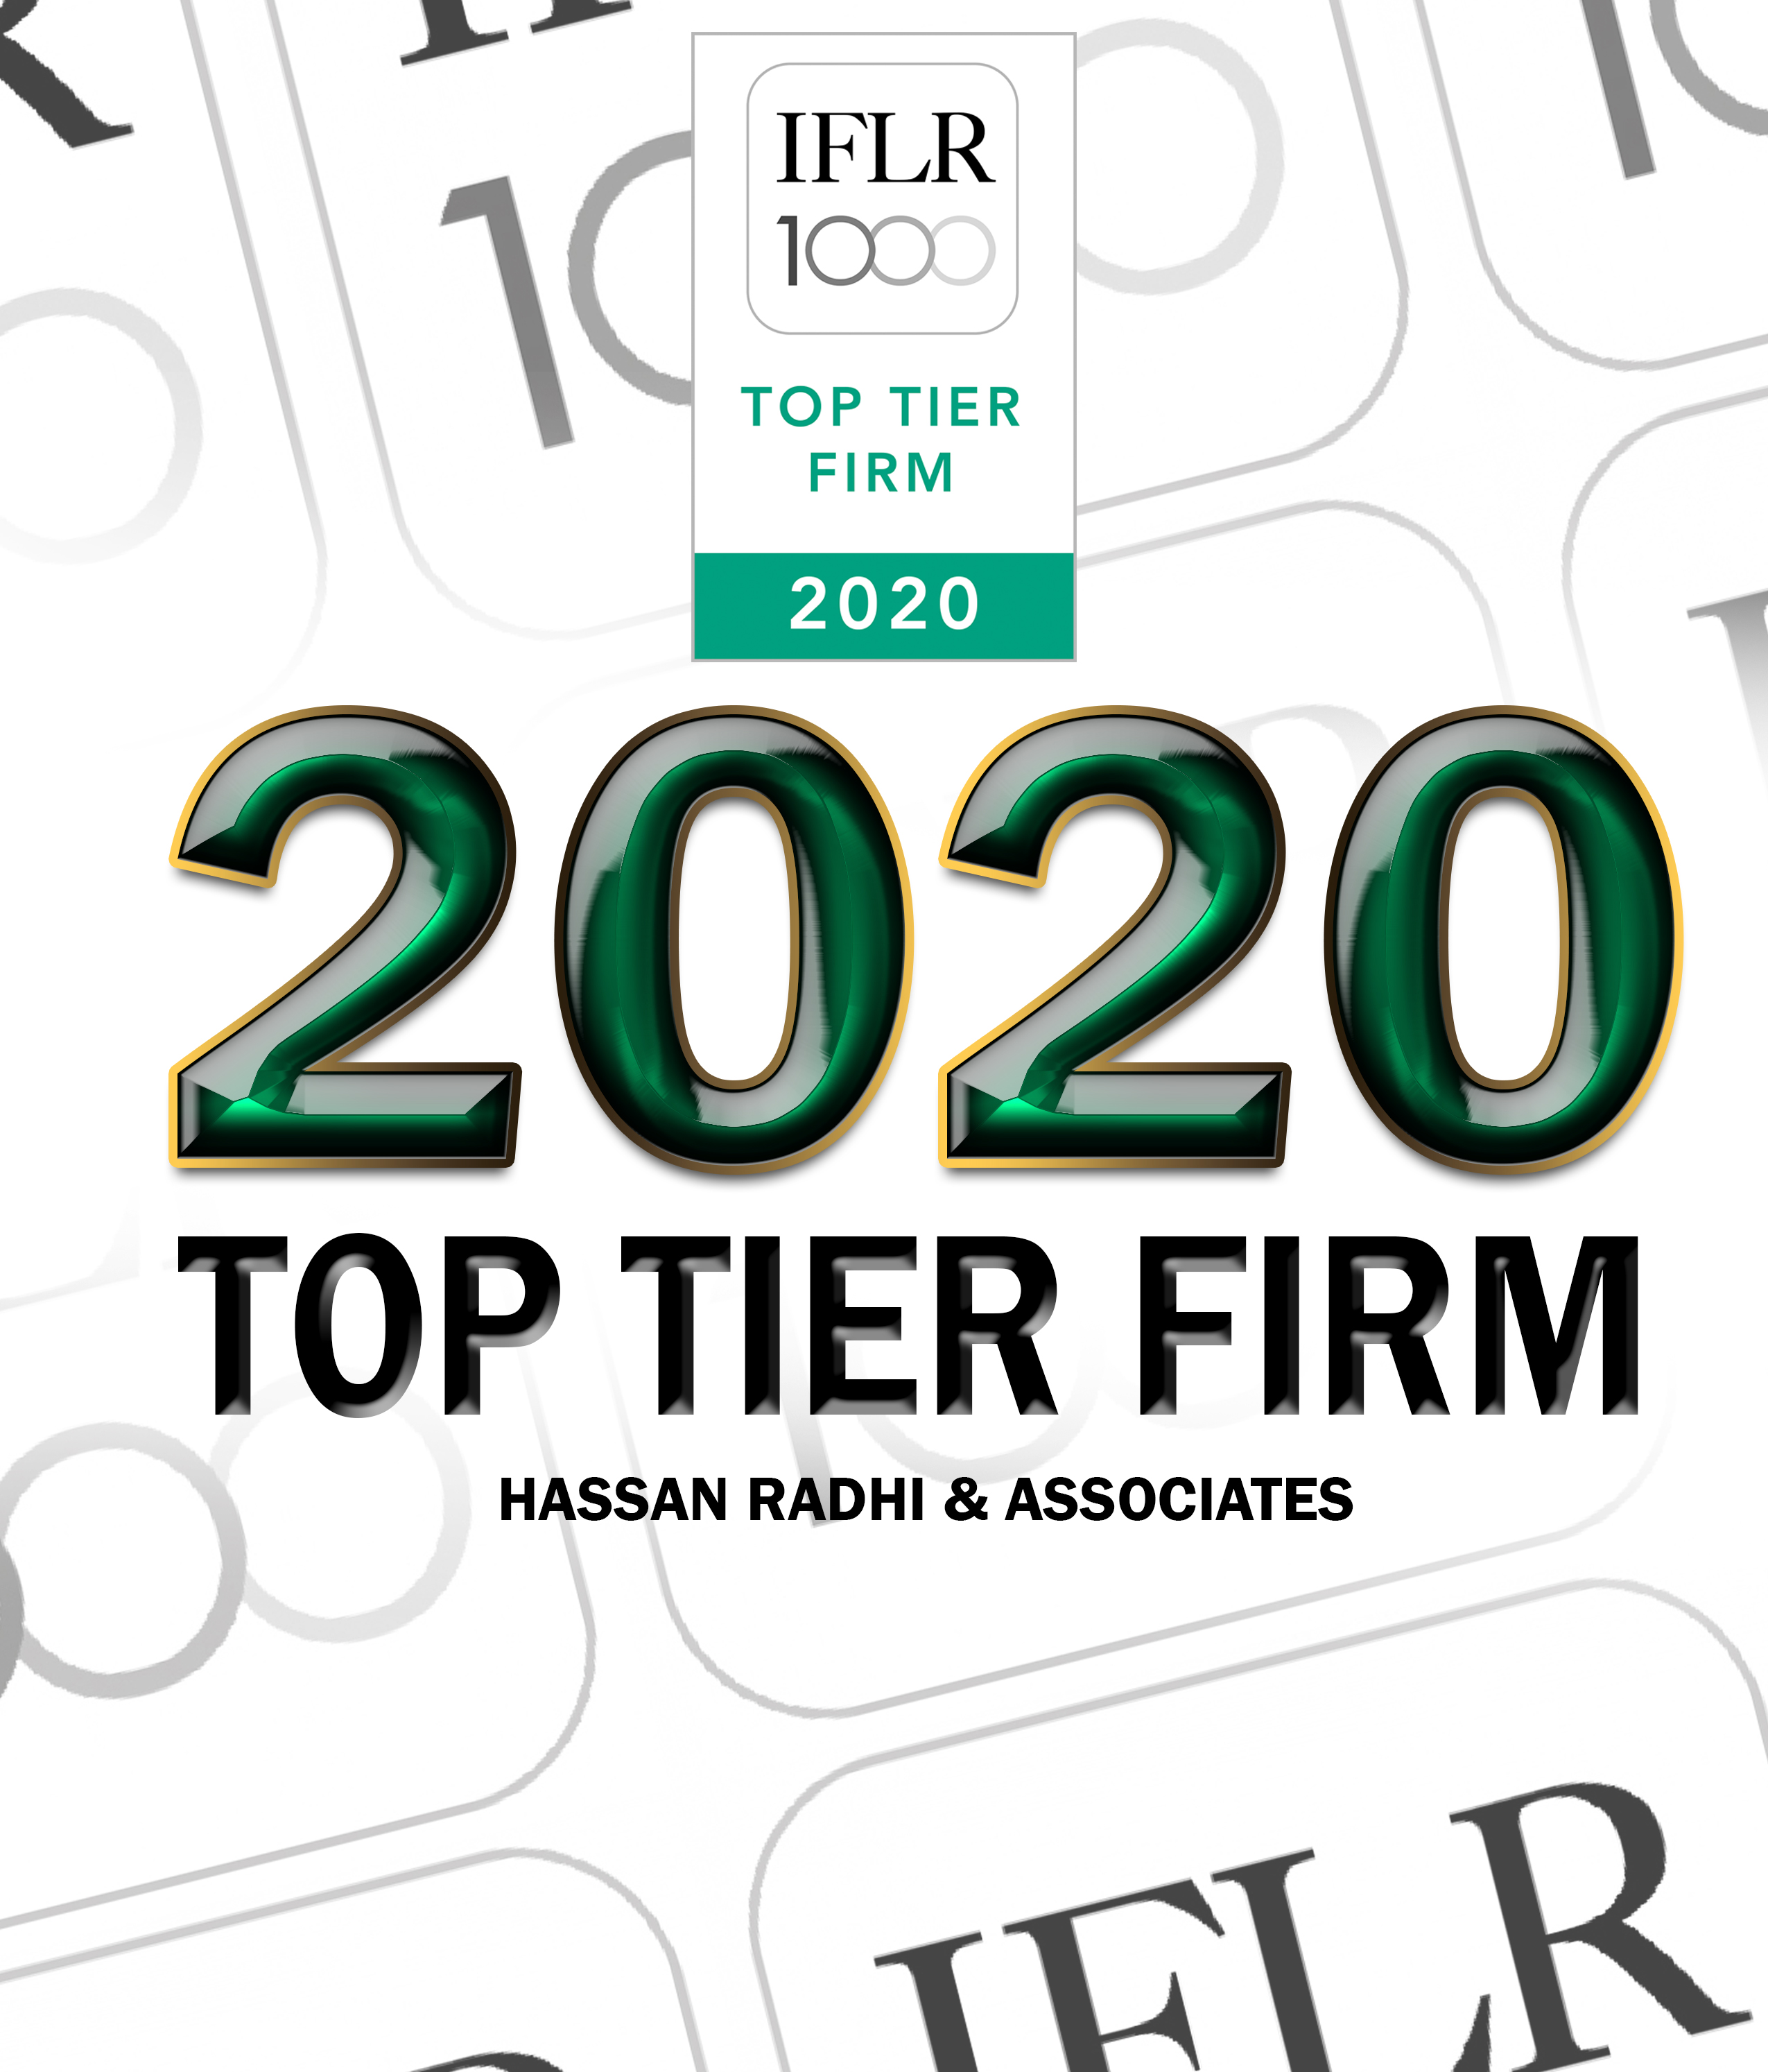 IFLR1000 - Top Tier Firm